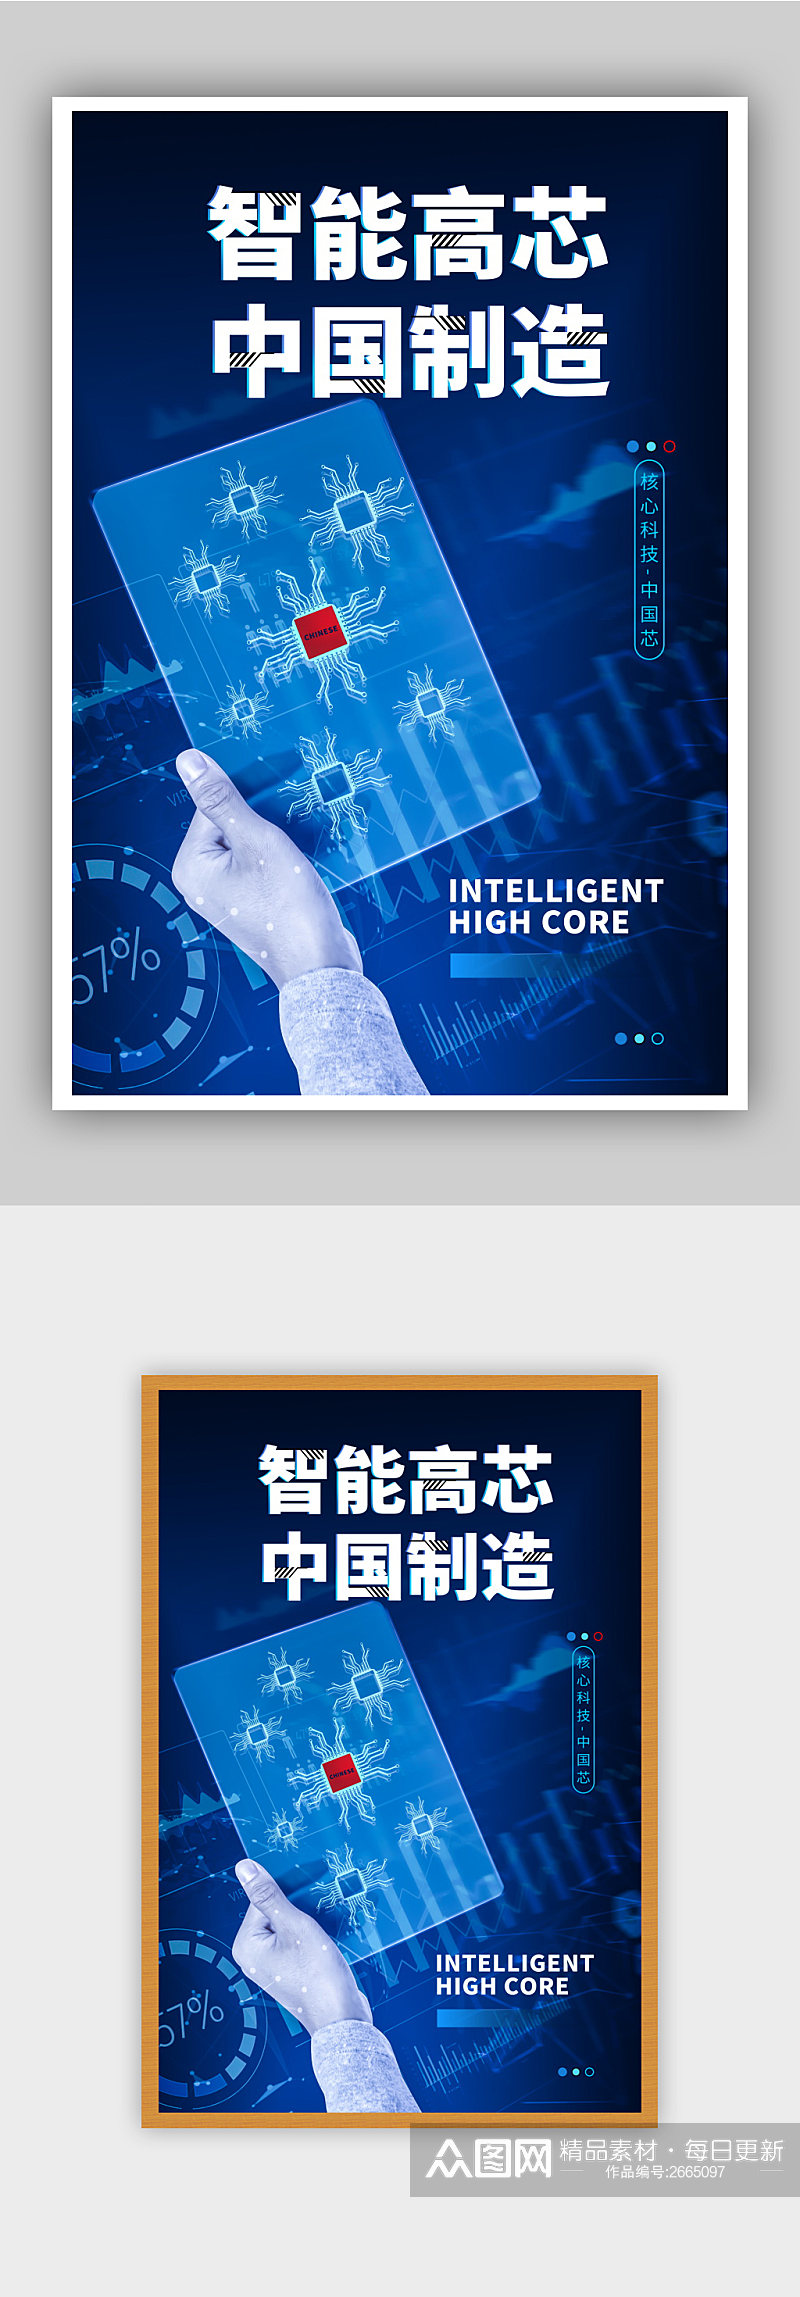 081619智能高芯中国制造科技海报素材